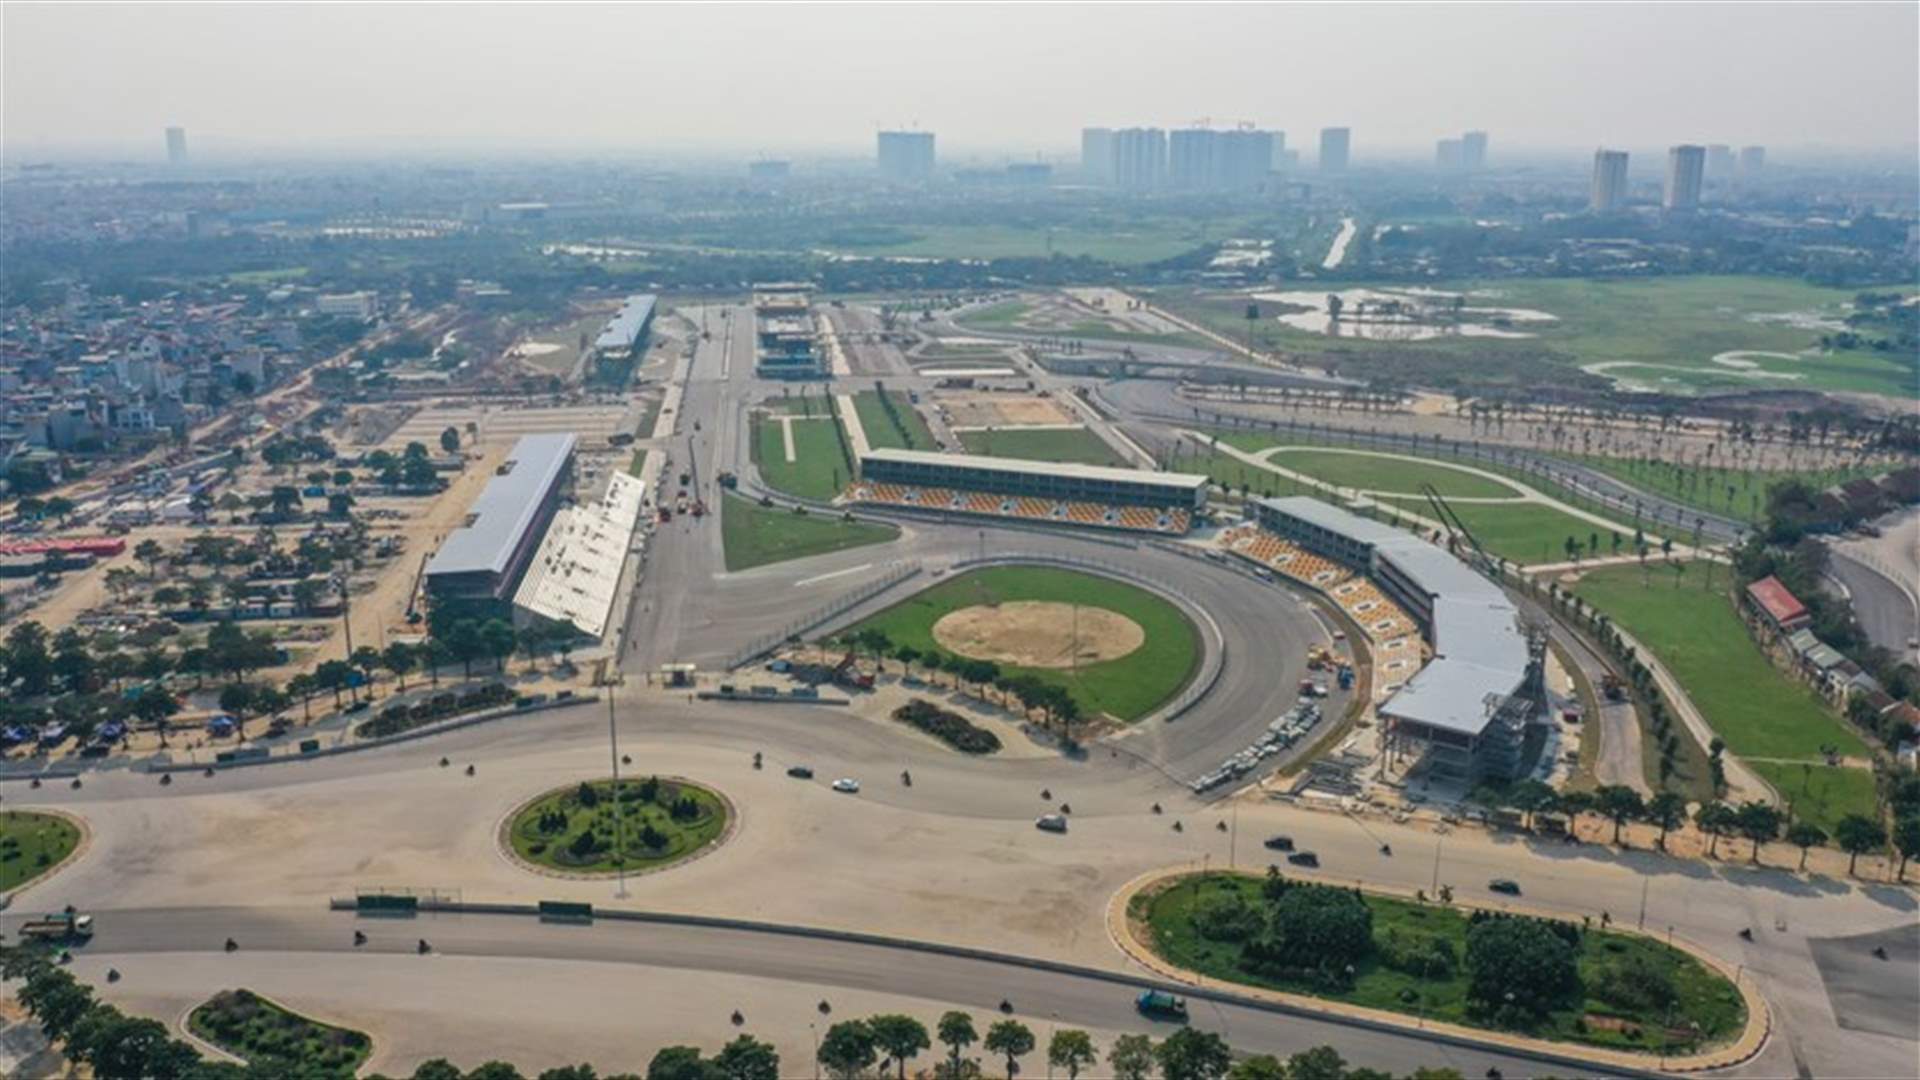 فيتنام تلغي النسخة الأولى من سباق الفورمولا 1 بسبب أزمة فيروس كورونا